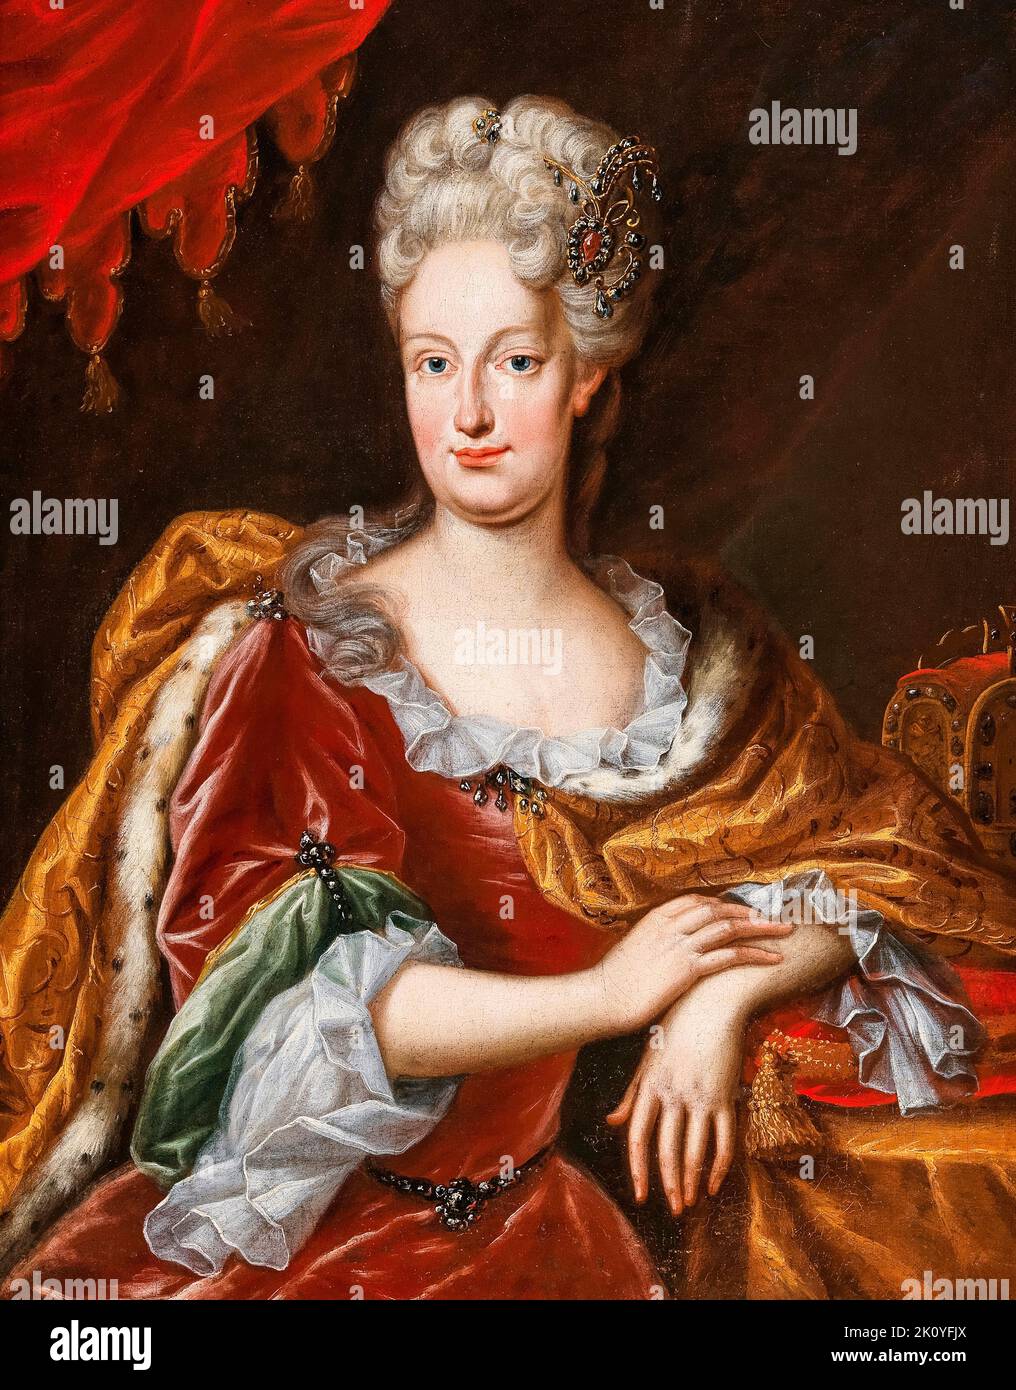 Portrait de l'impératrice Elisabeth Christine de Brunswick-Wolfenbüttel (1691-1750), peinture à l'huile sur toile par Frans van Stampart, 1708-1715 Banque D'Images